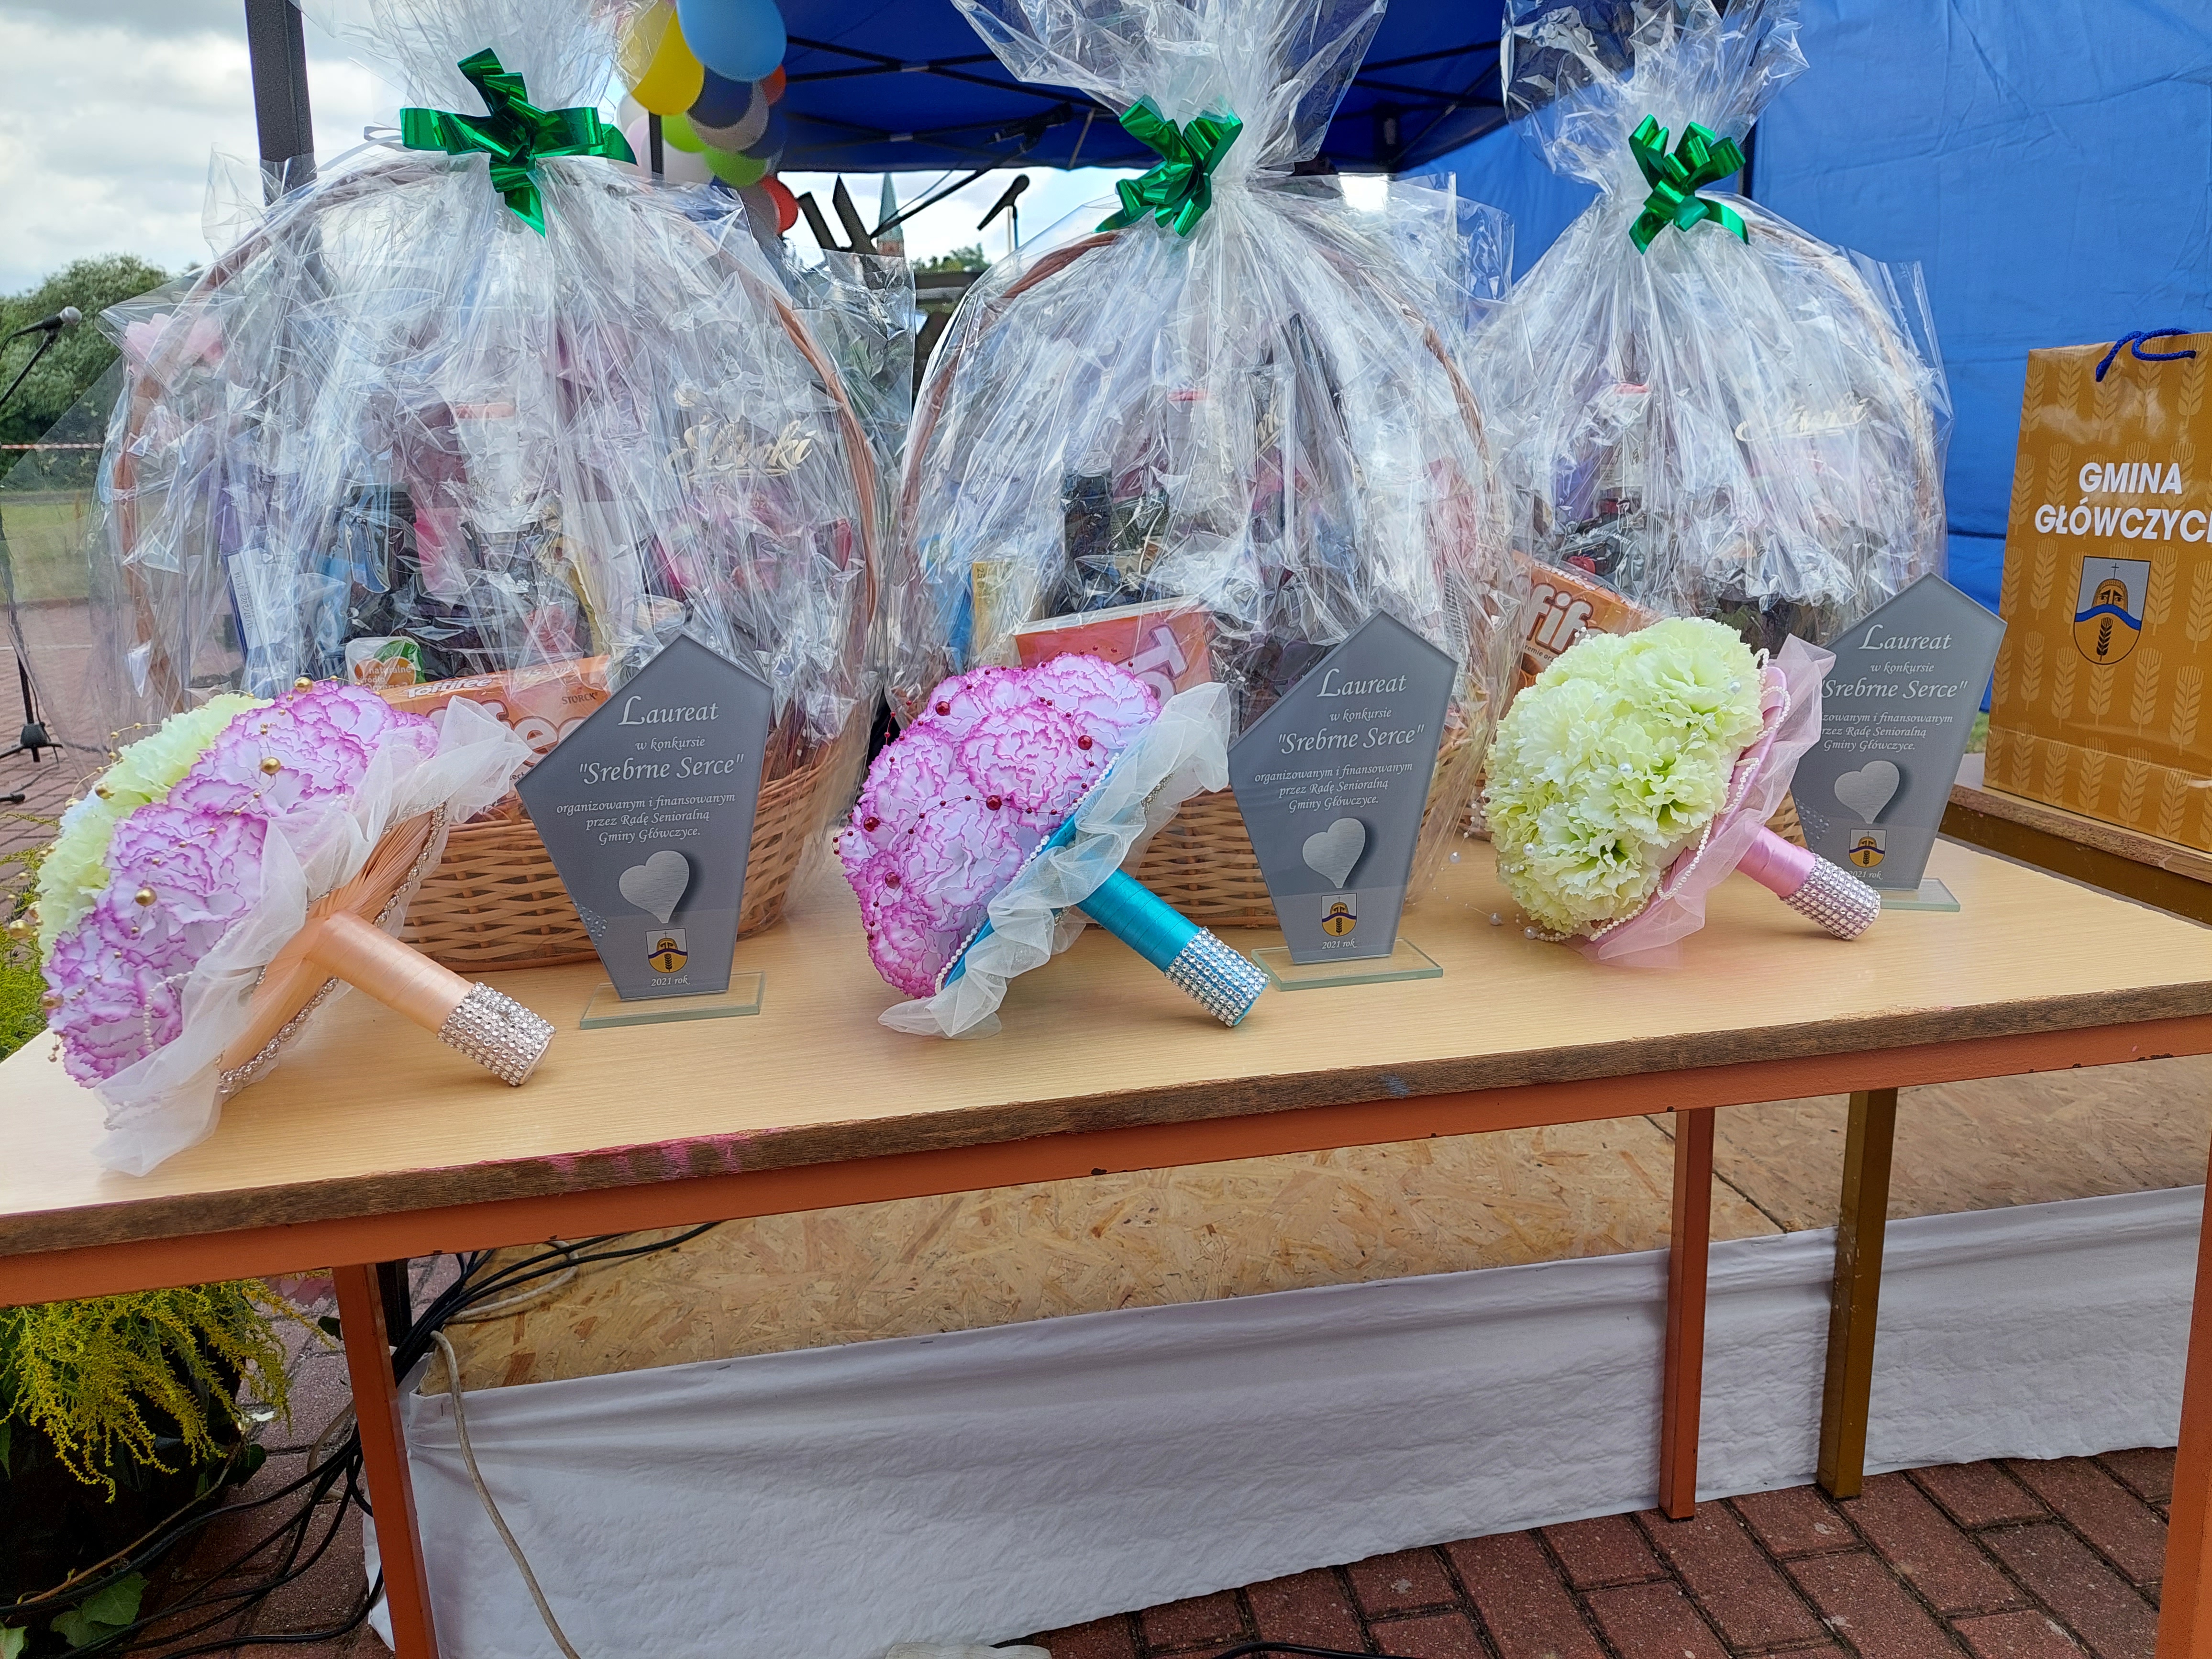 Słół z nagrodami rzeczowymi dla laureatów konkursu Srebrne Serce: kosze ze słodyczami, bukiety, statuetki.